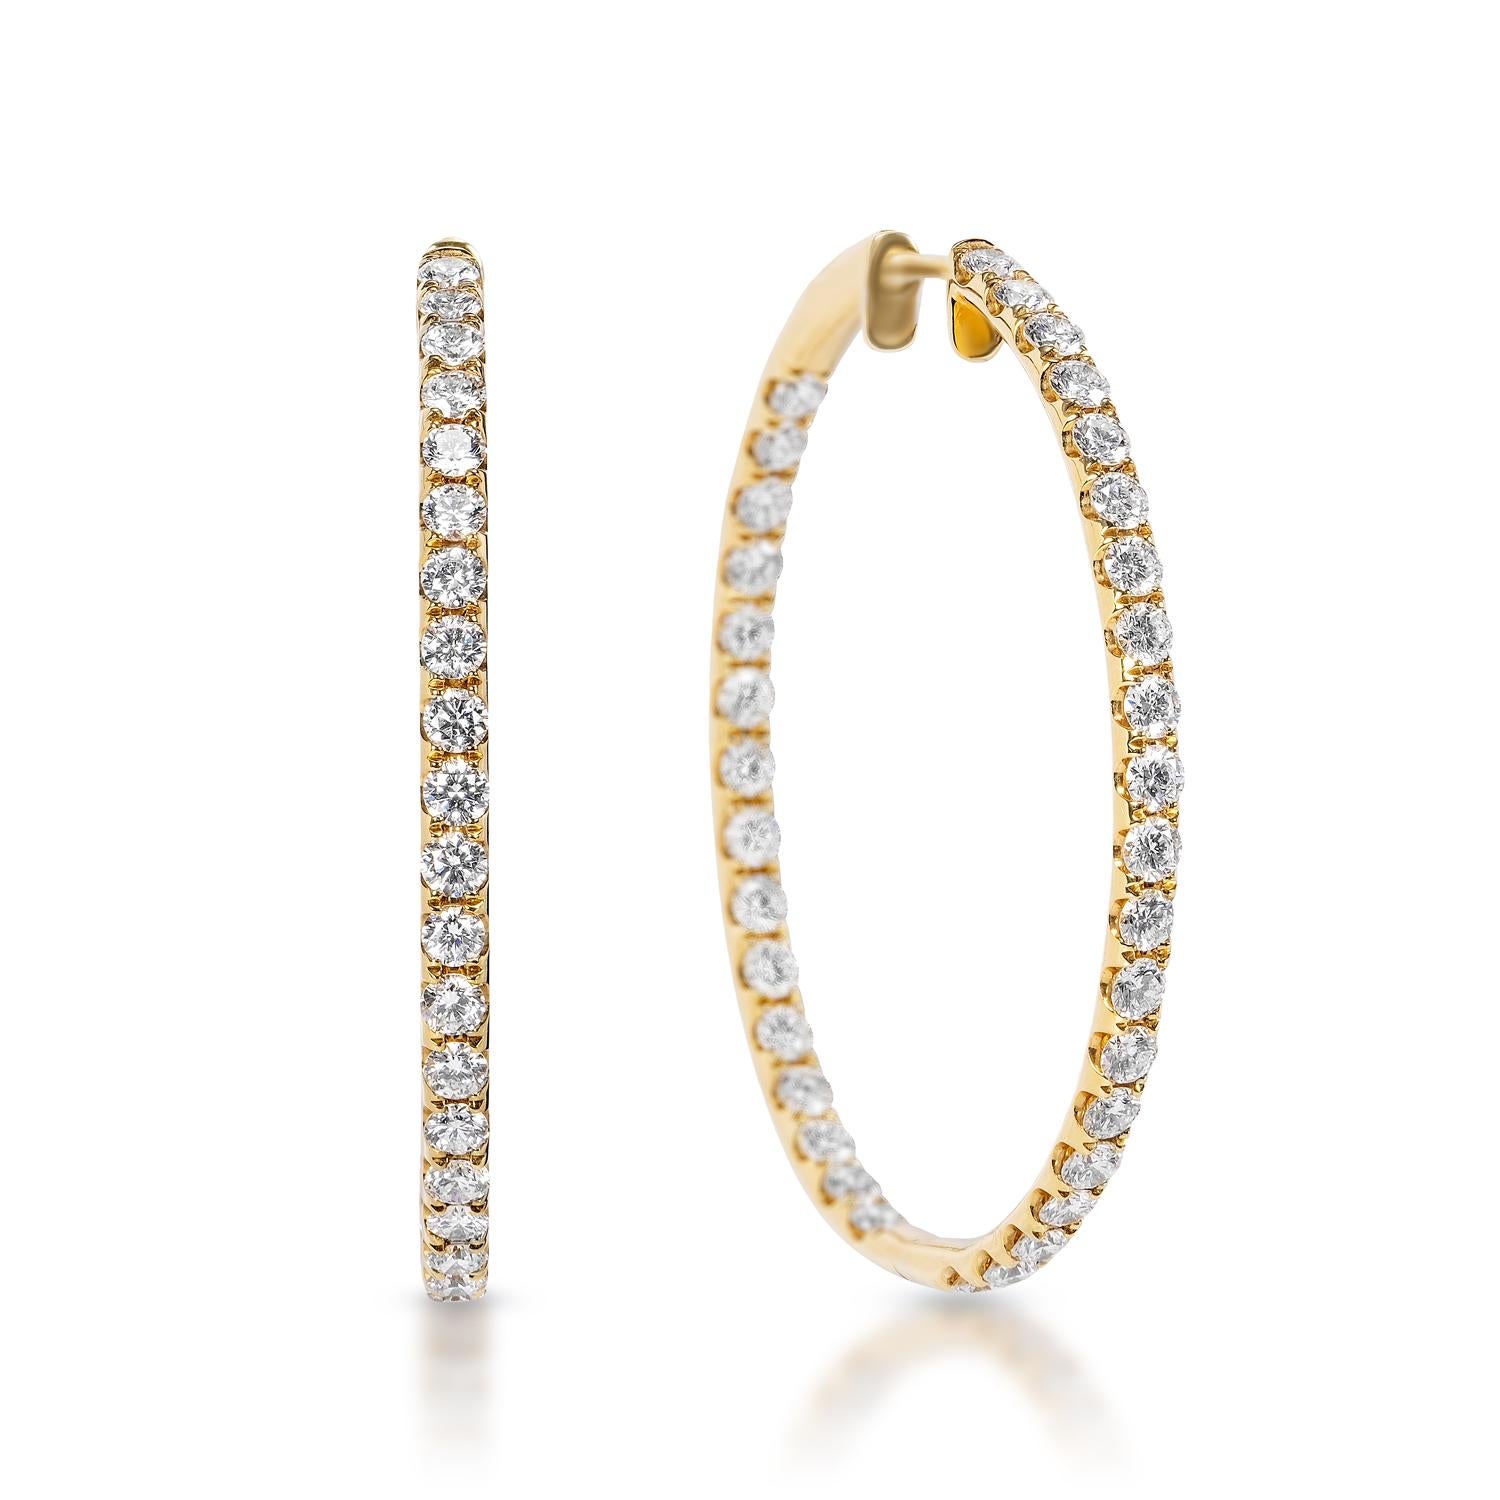 Boucles d'oreilles en diamant :

Poids en carats : 3,70 carats
Forme : Coupe brillante ronde
Métal : Or jaune 14 carats
Style : Boucles d'oreilles